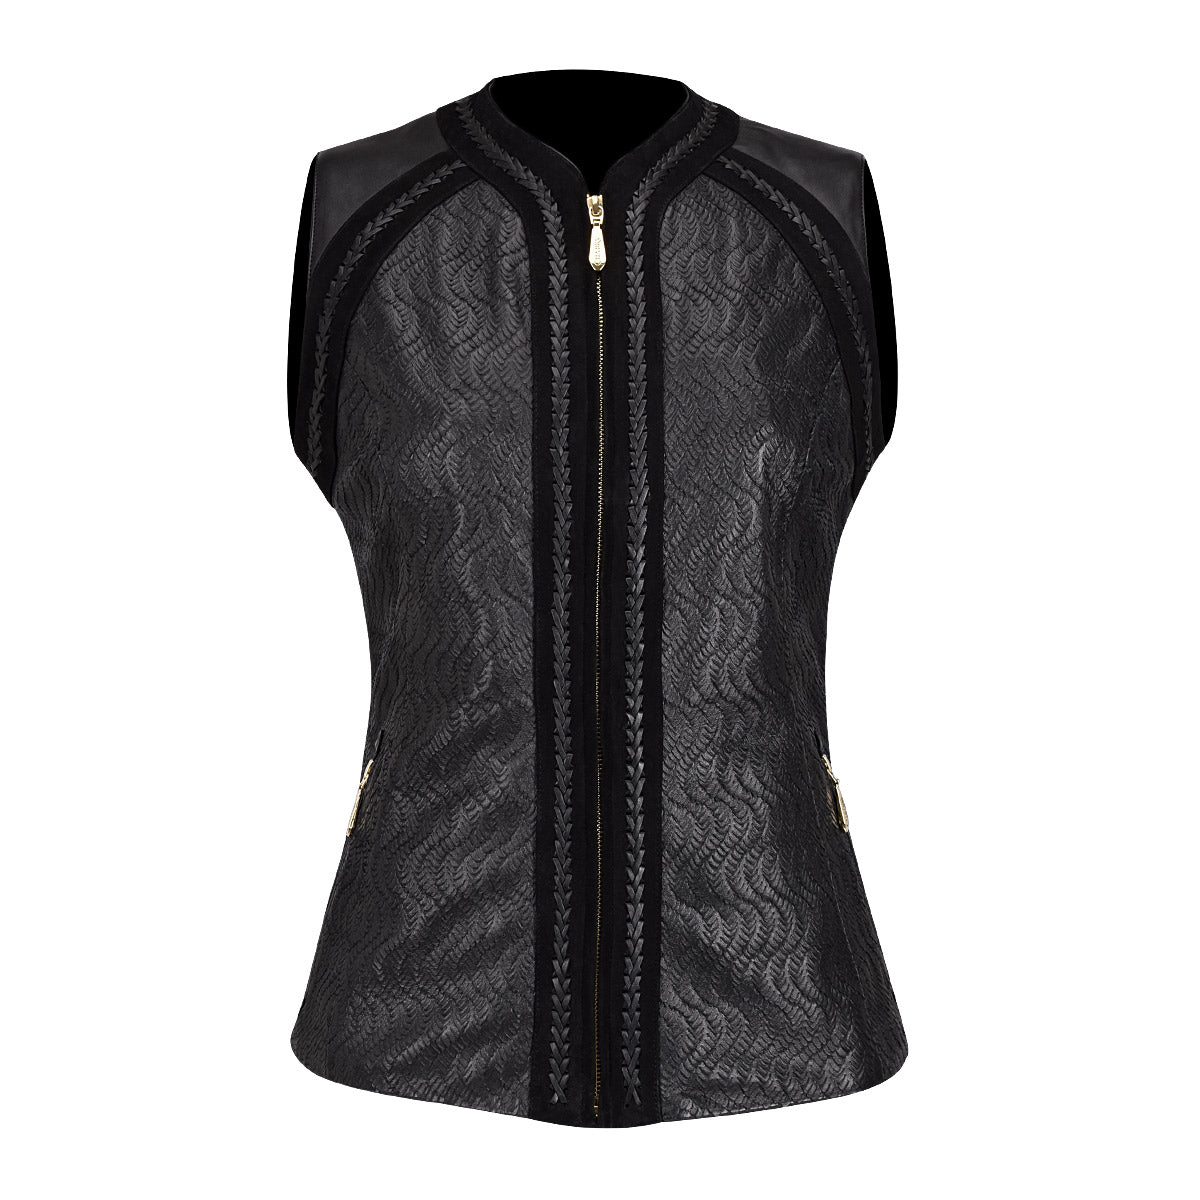 Womens formal black leather vest